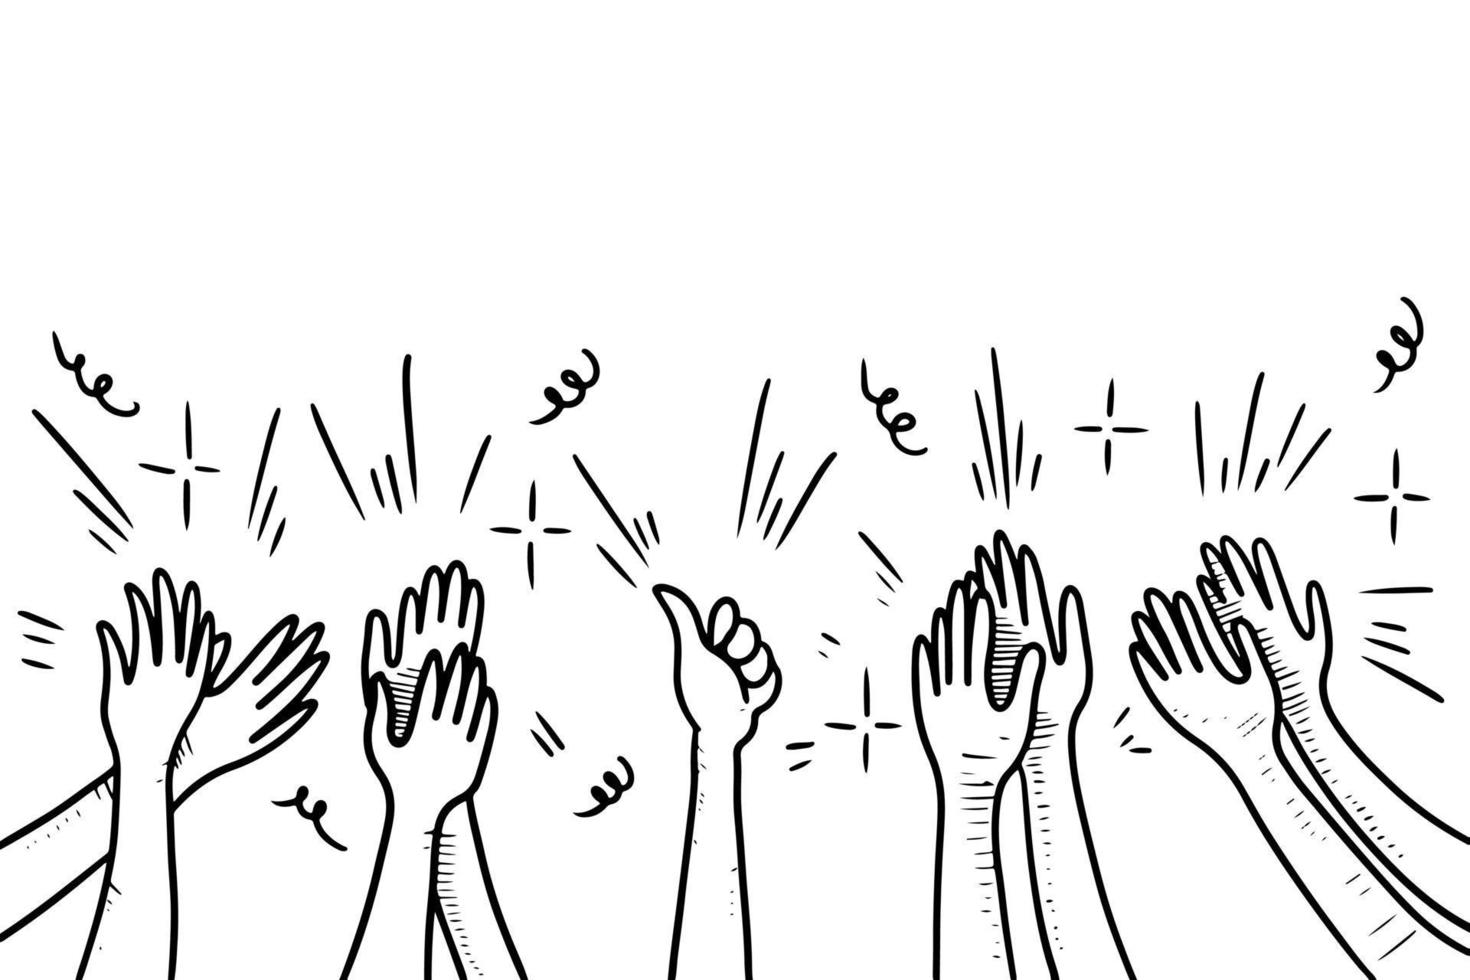 style de croquis dessinés à la main d'applaudissements, geste du pouce en l'air. mains humaines applaudissant l'ovation. sur le style doodle, illustration vectorielle. vecteur